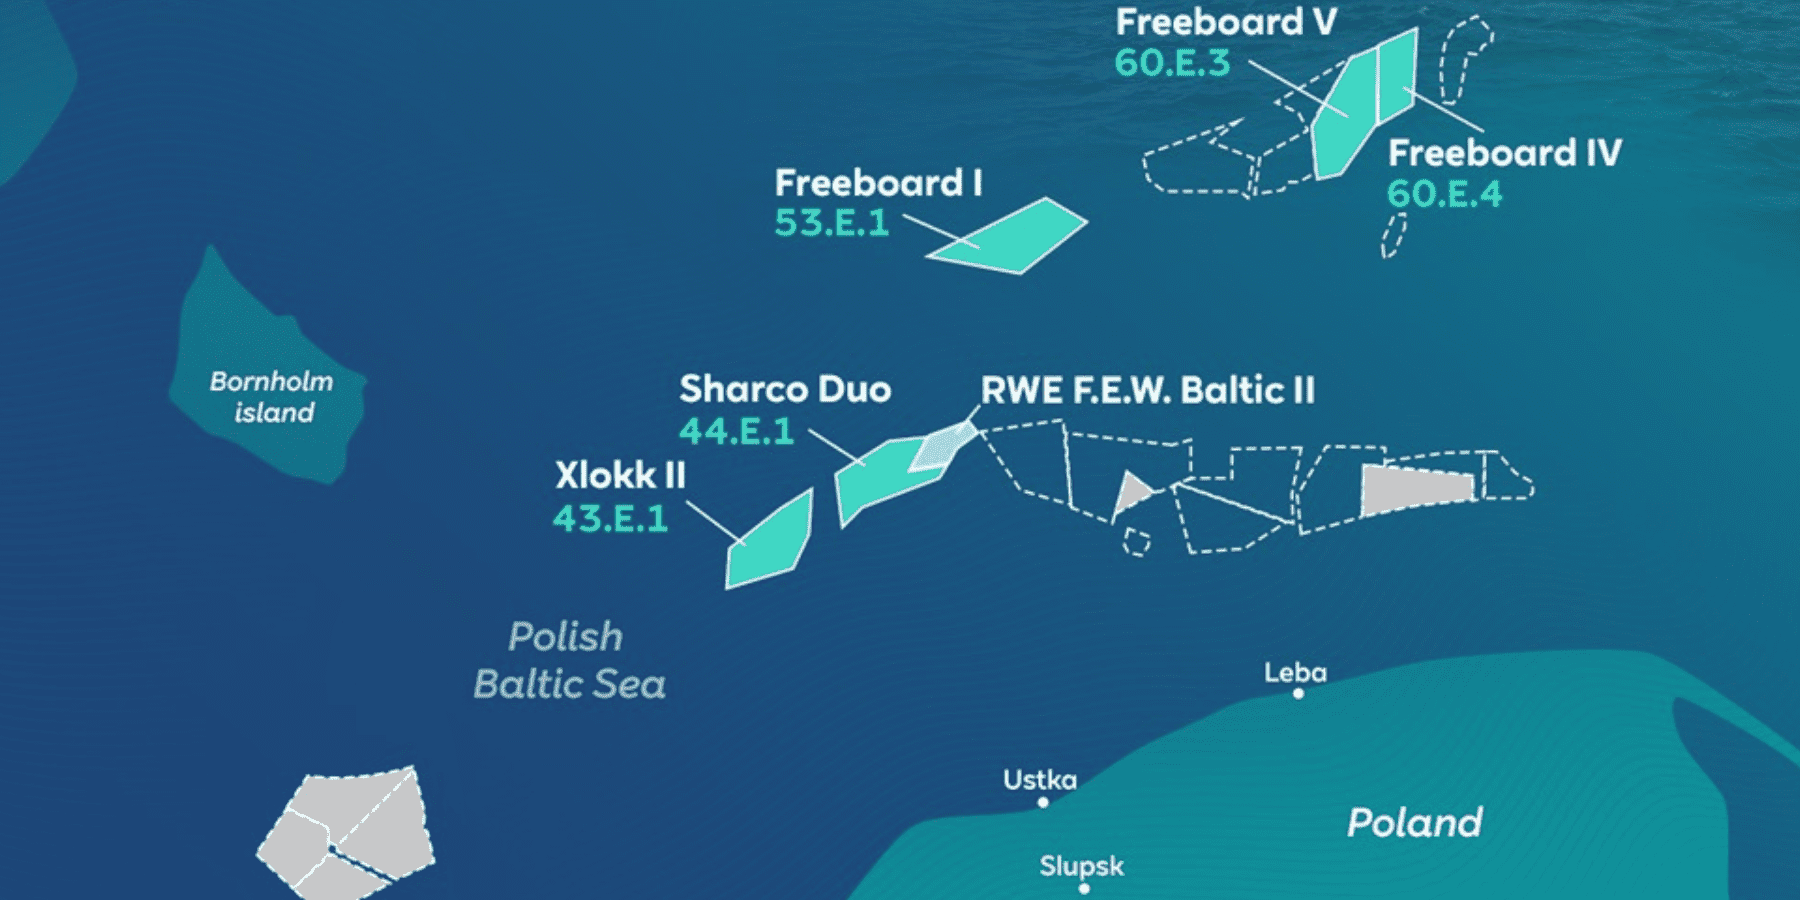 Farma wiatrowa RWE na polskim Bałtyku ma produkować zielony wodór na morzu i magazynować energię